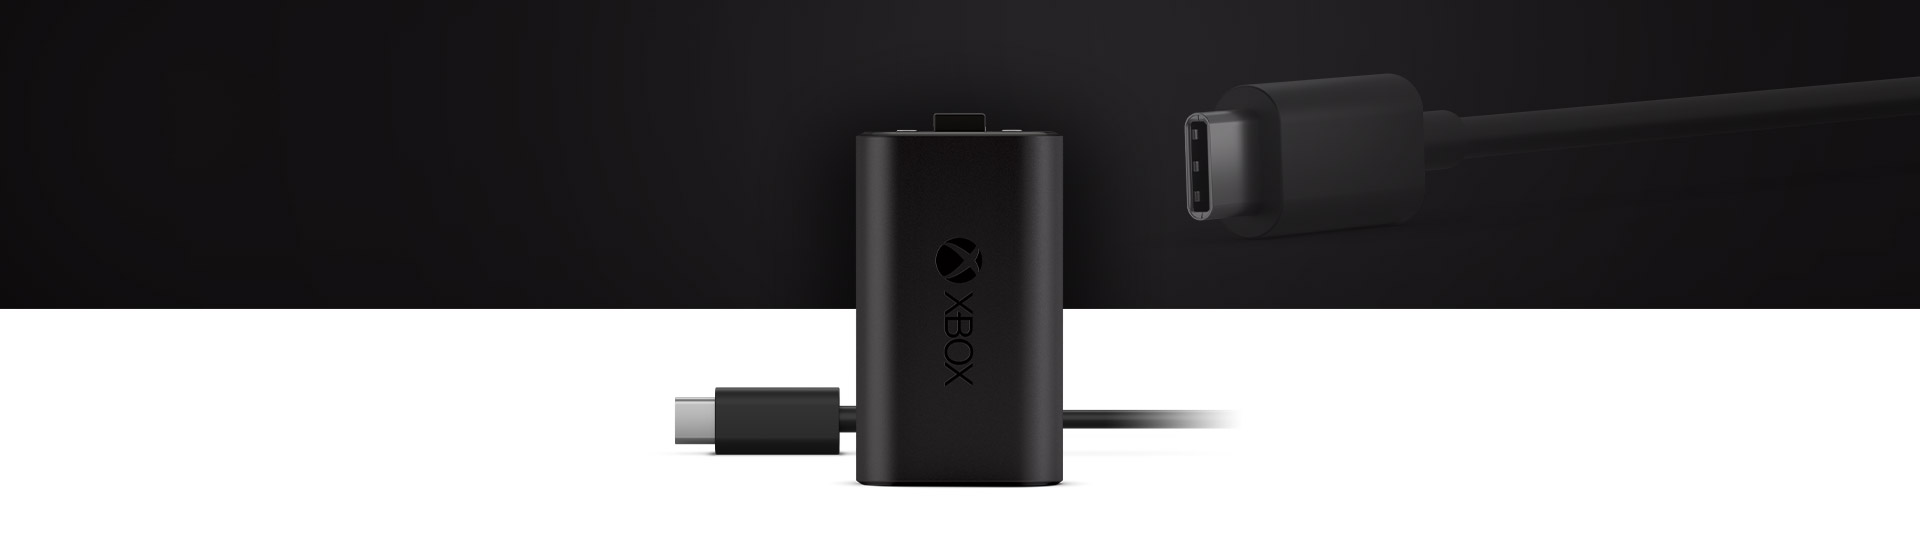 Bateria Recarregável Xbox + Cabo USB-C® com um grande plano do Cabo USB-C®